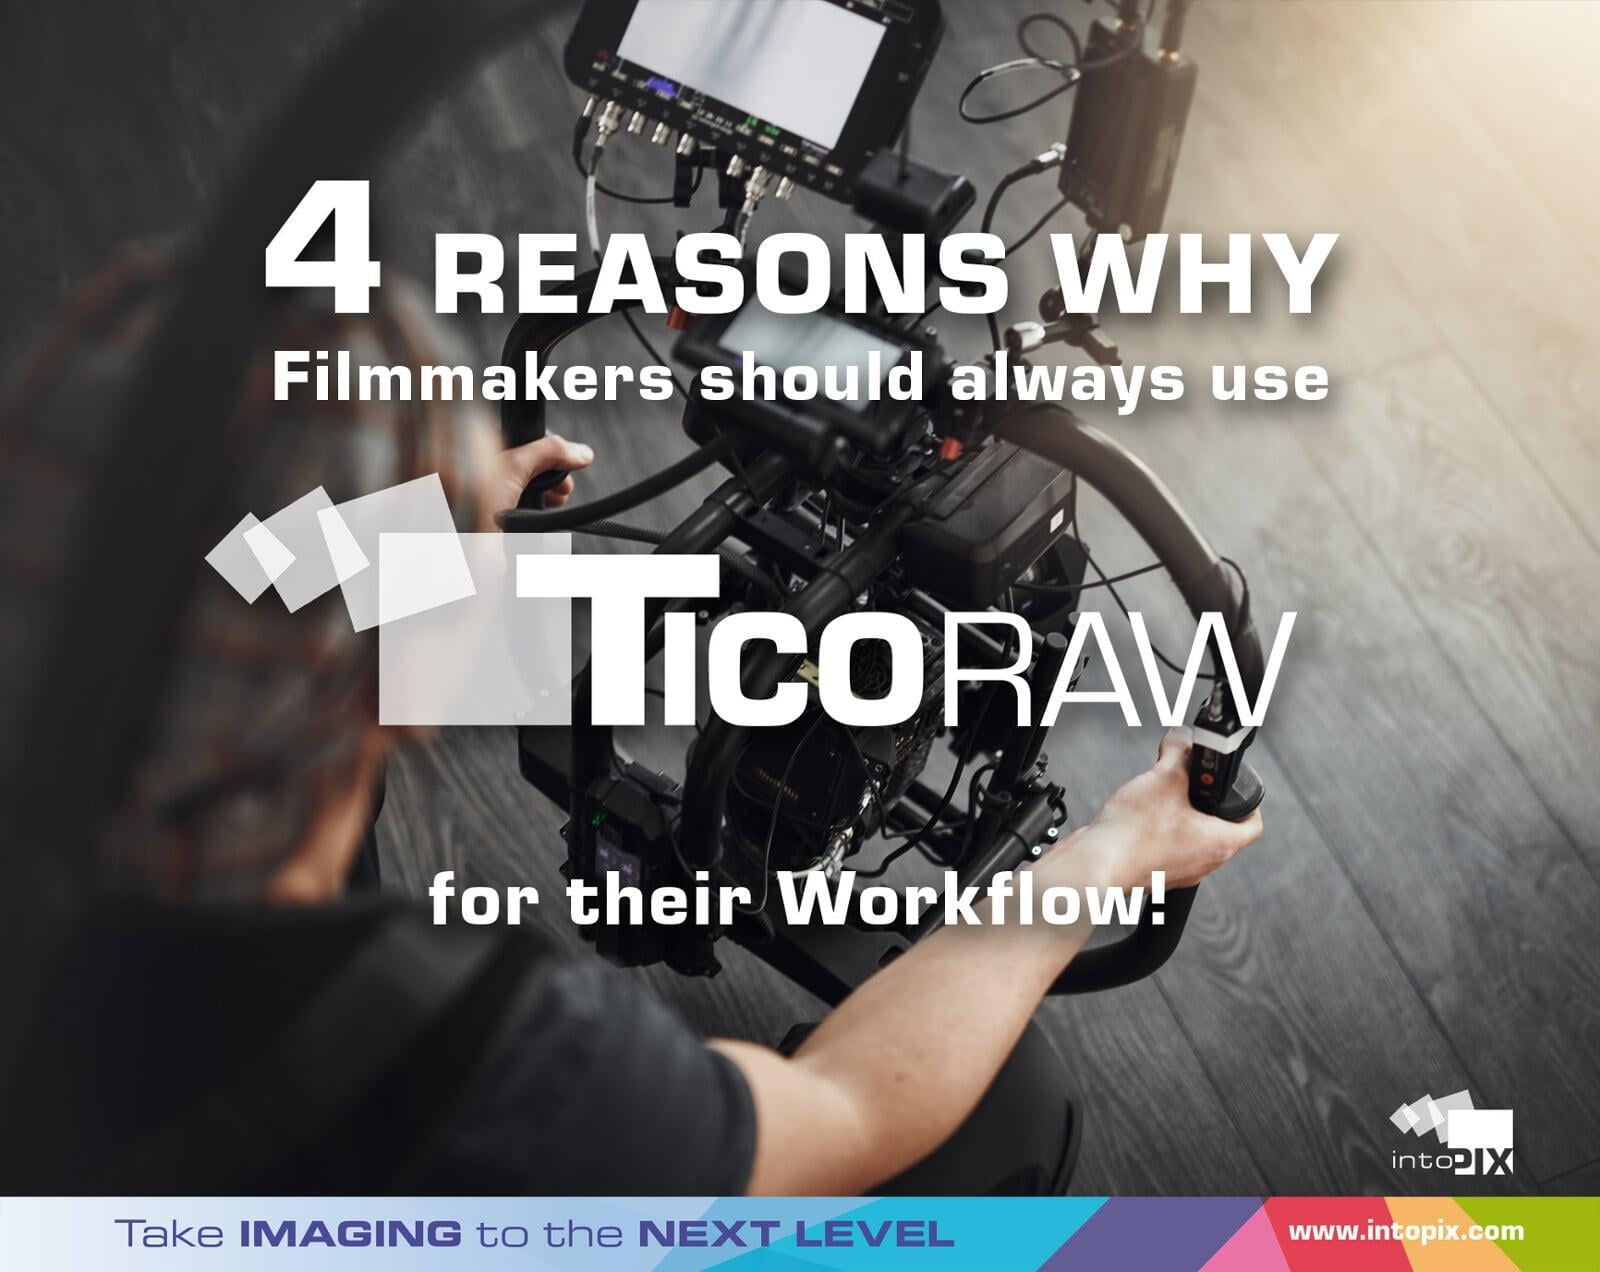 영화 제작자로서 워크플로우에 TicoRAW 를 사용하는 4가지 이유 